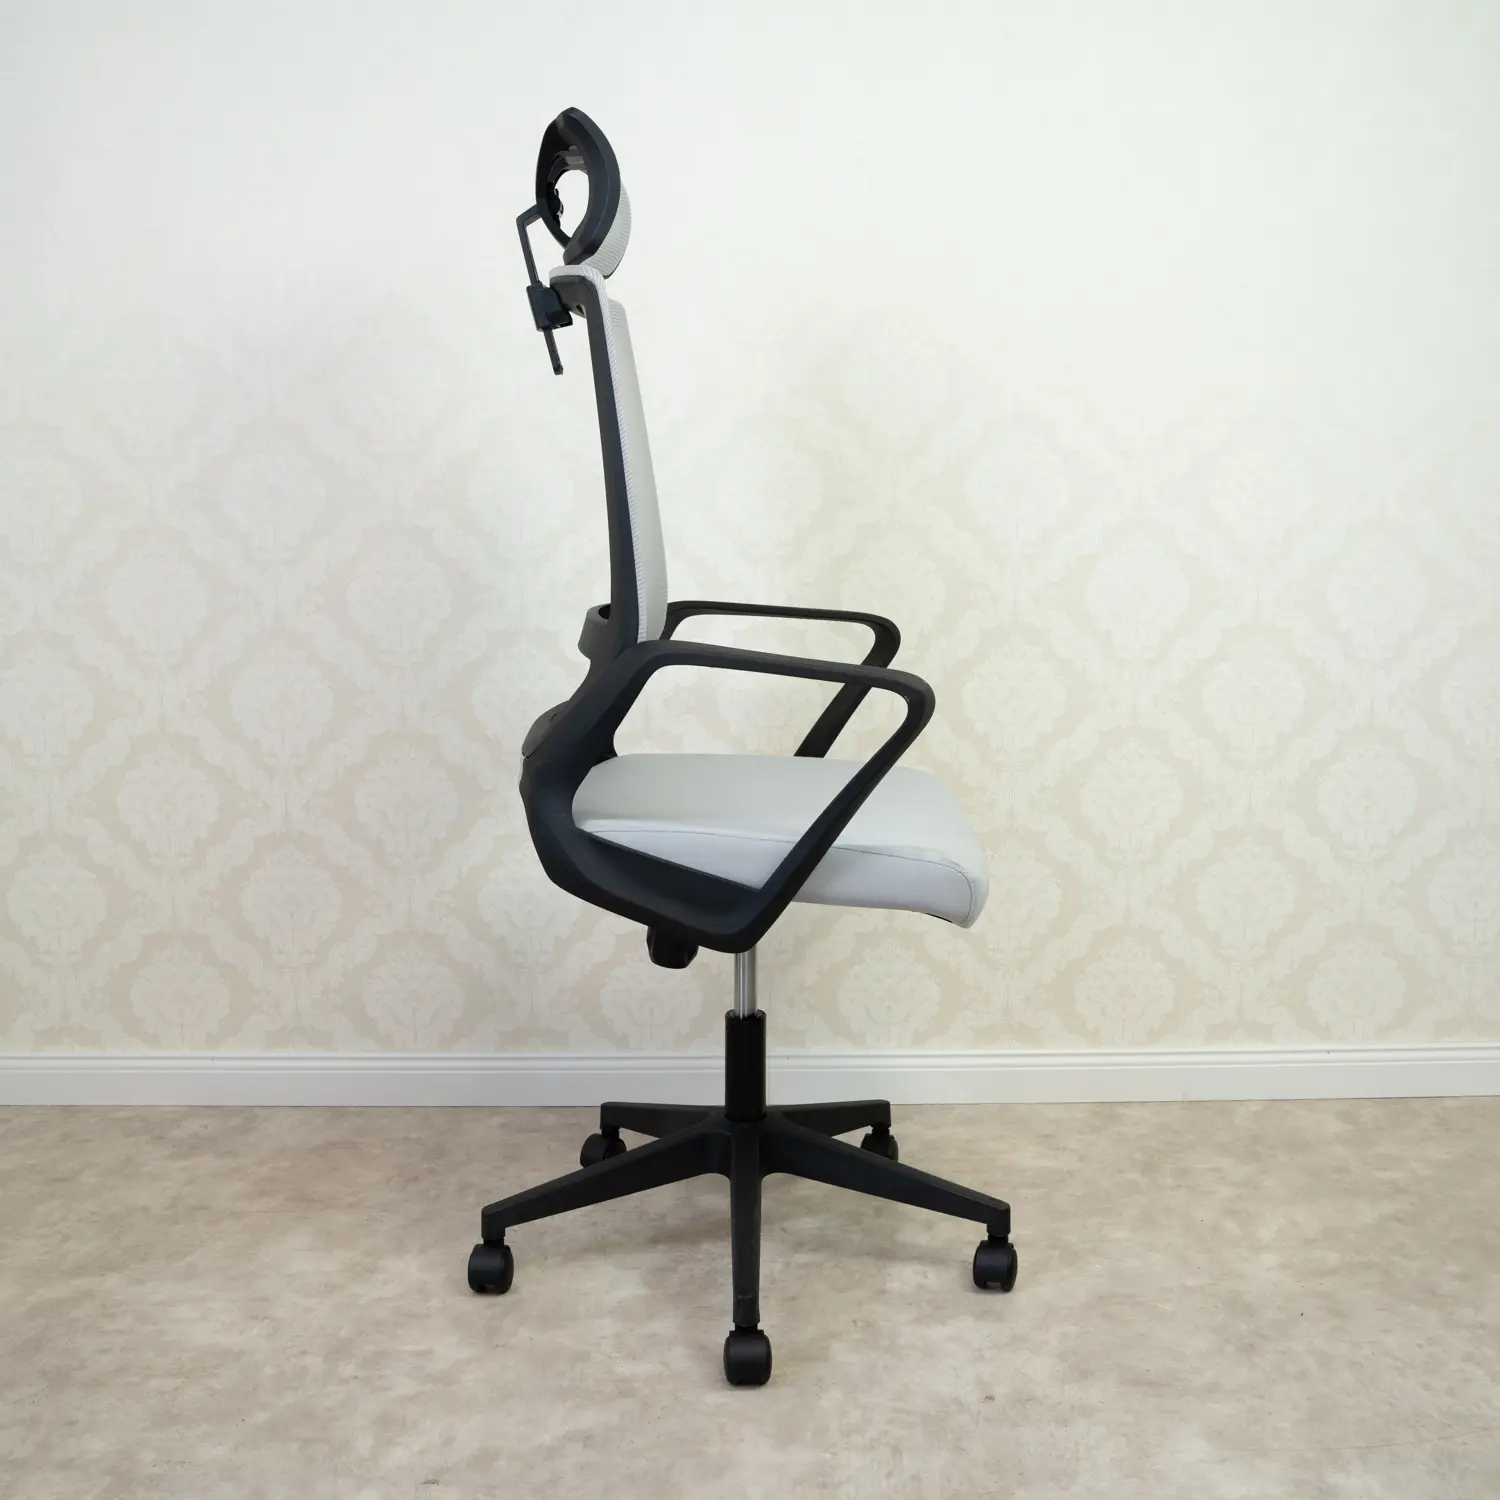 Irodai szék, forgószék szürke (LY-109-GREY)